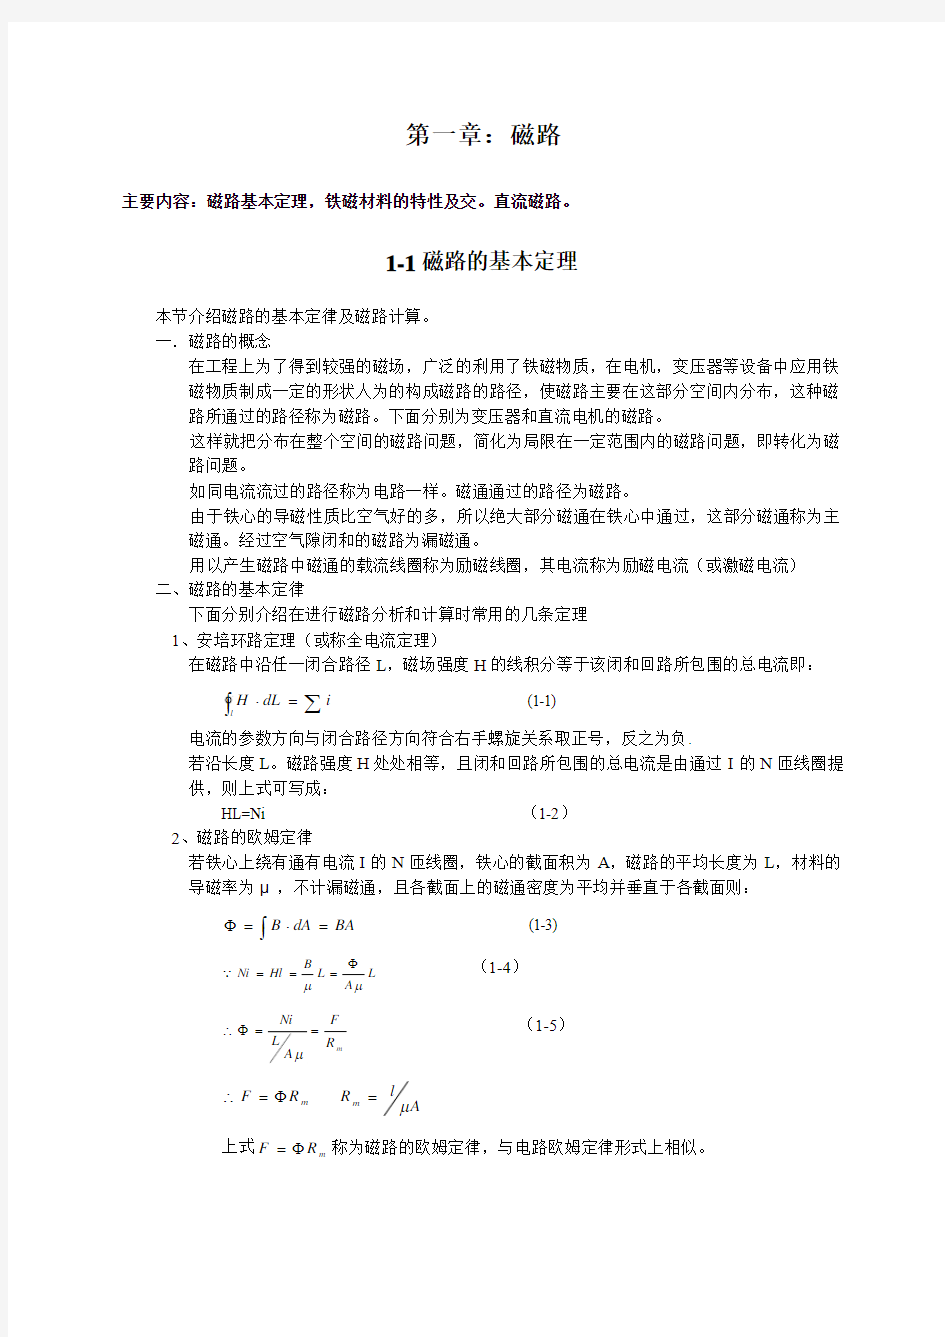 华中科技大学版【电机学】(第三版)电子讲稿【第一章】